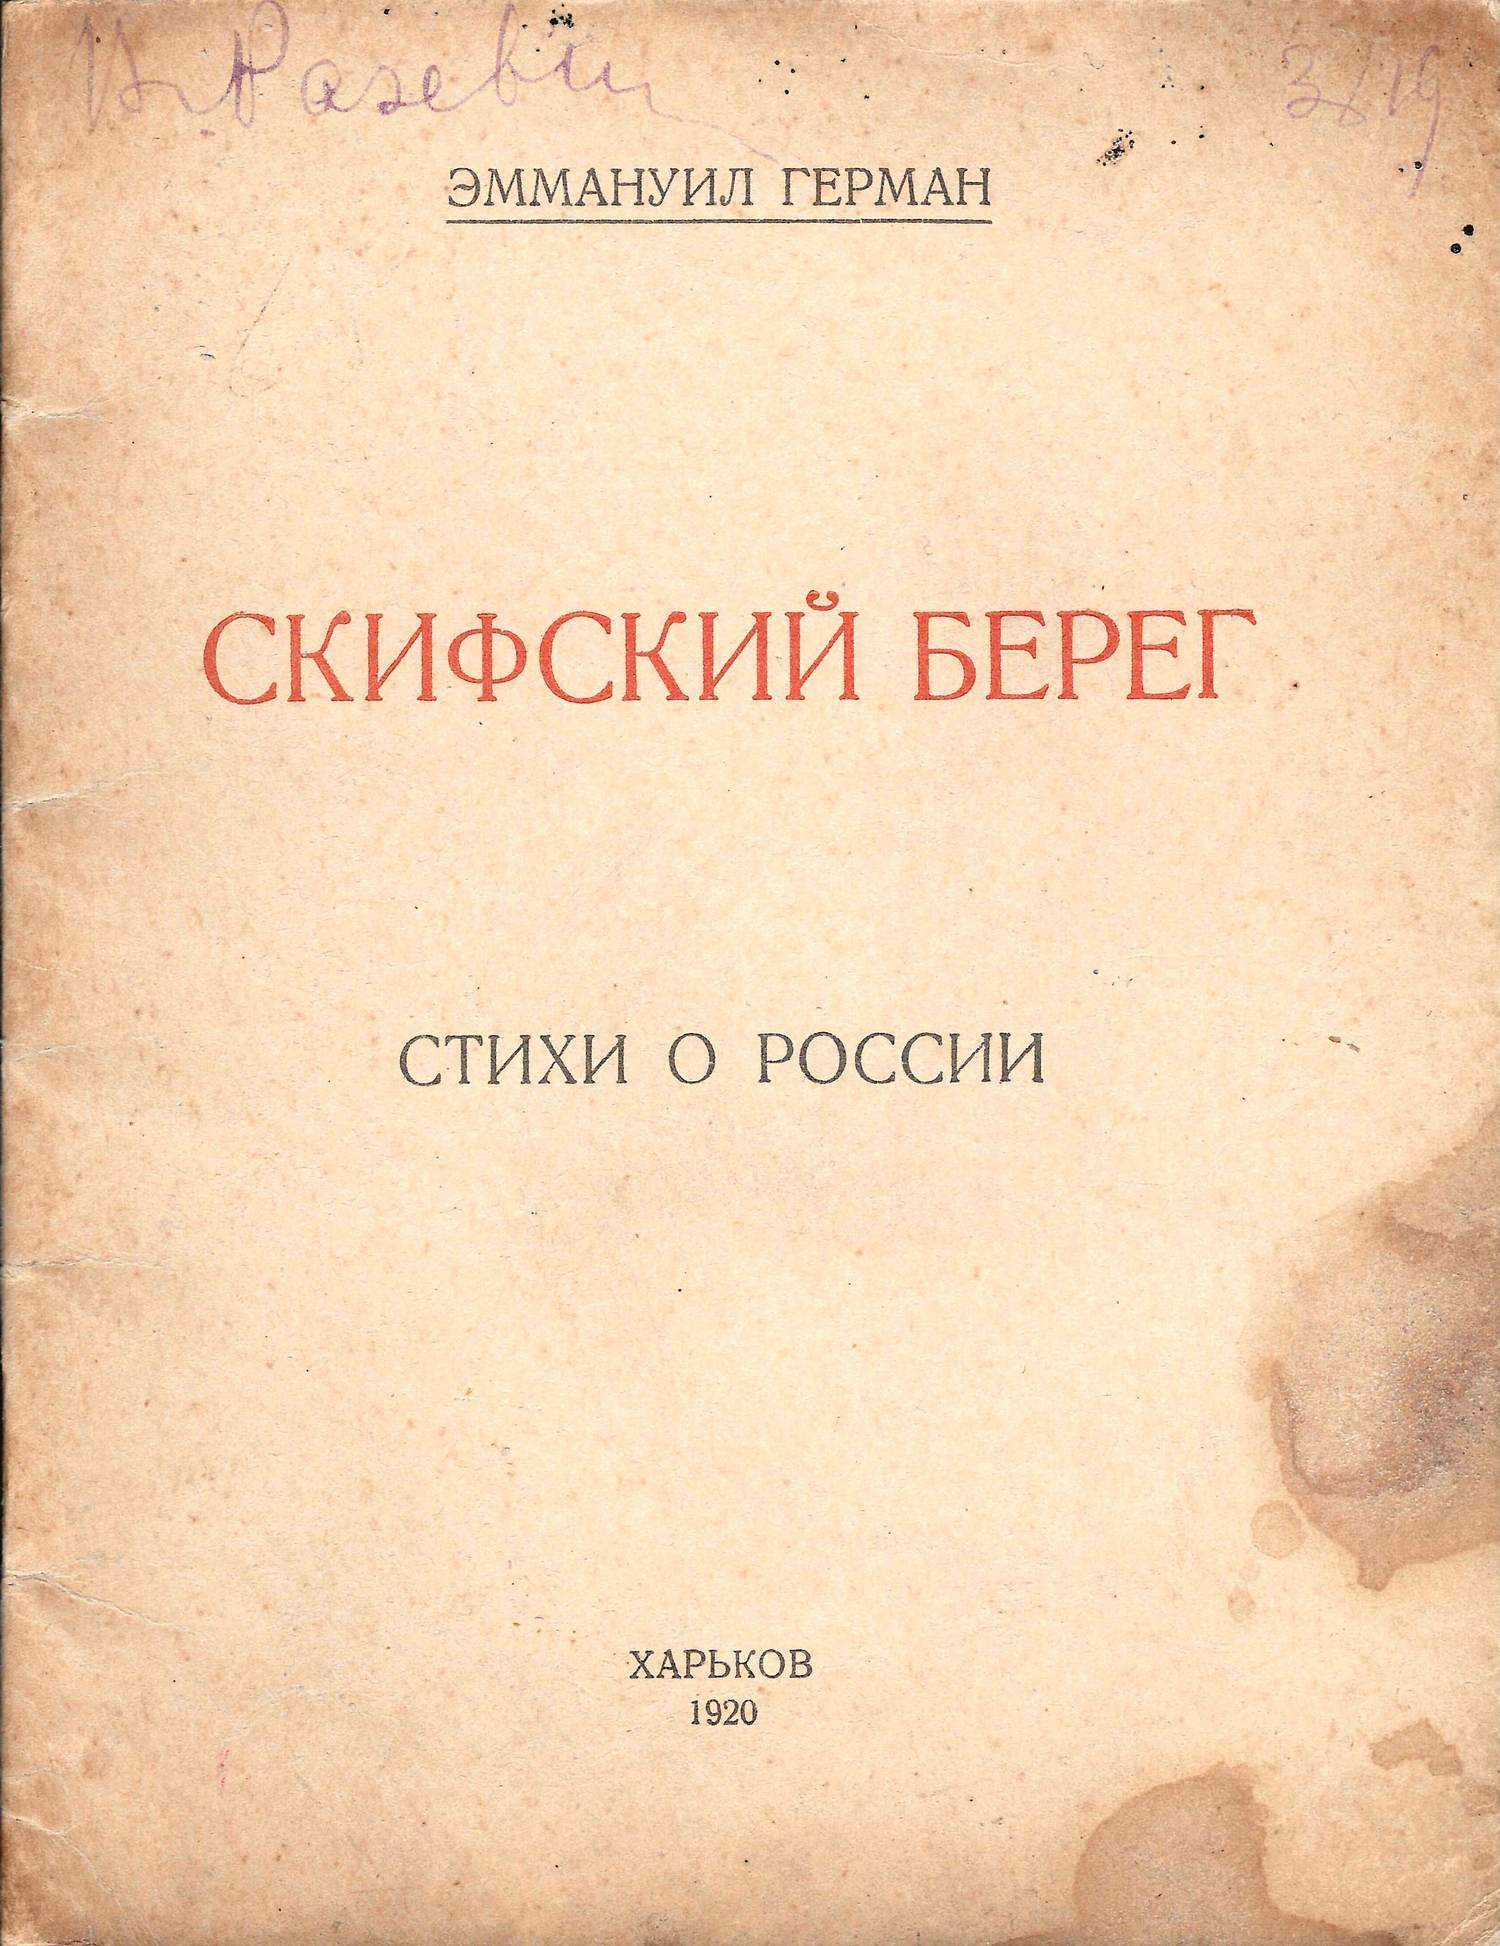 Герман Э. Скифский берег. Стихи о России (Харьков, 1920).